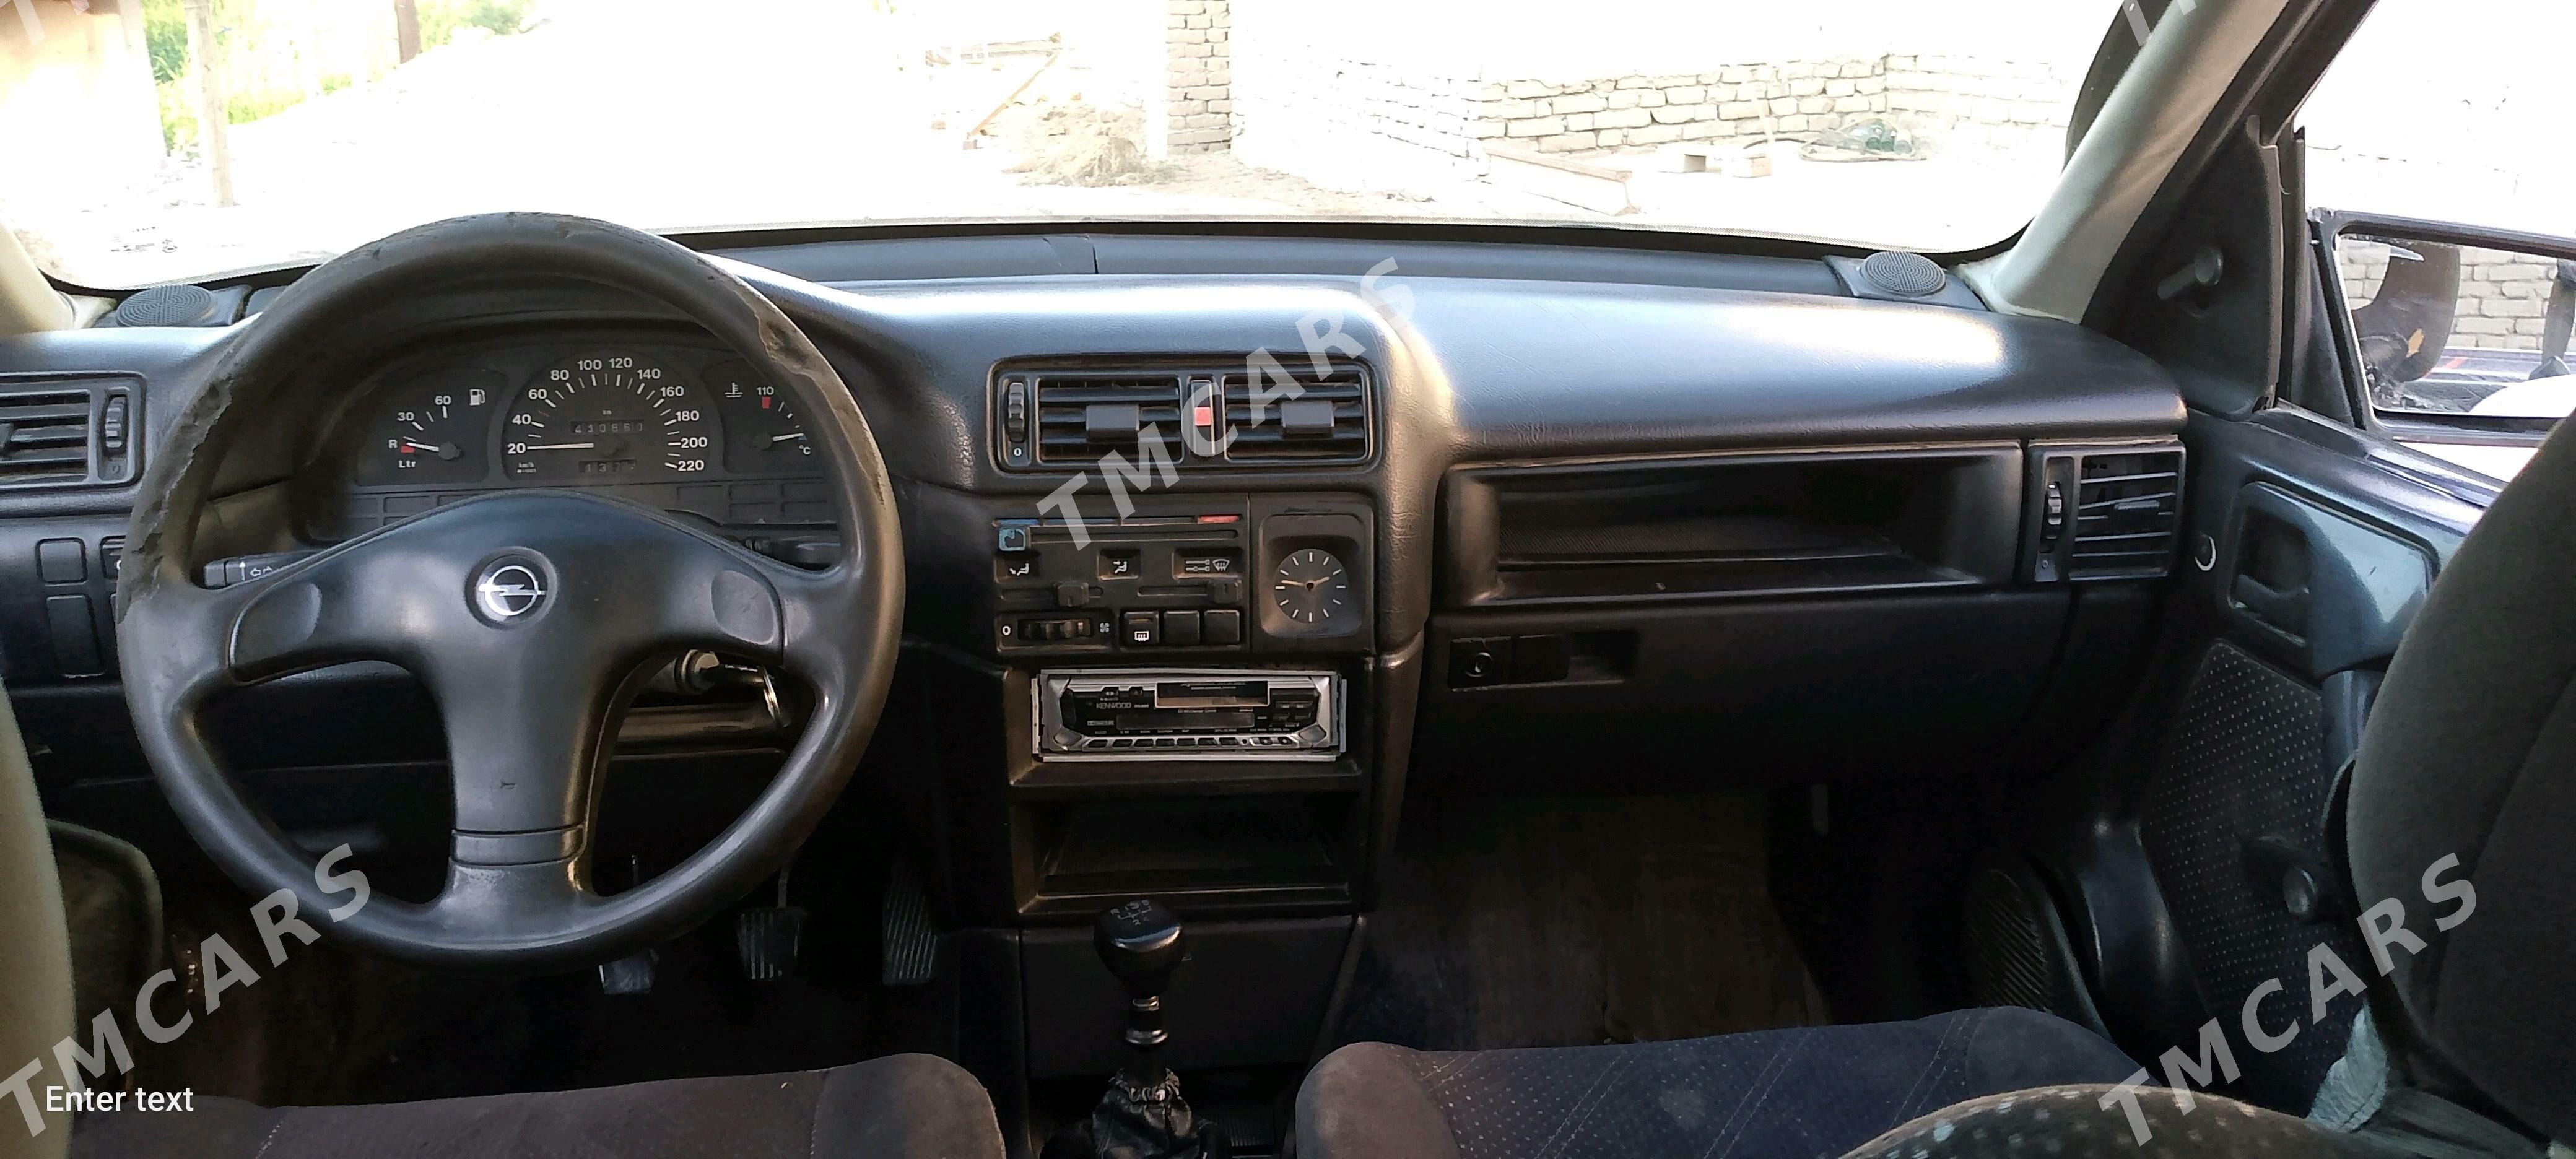 Opel Vectra 1993 - 26 000 TMT - Şabat etr. - img 3